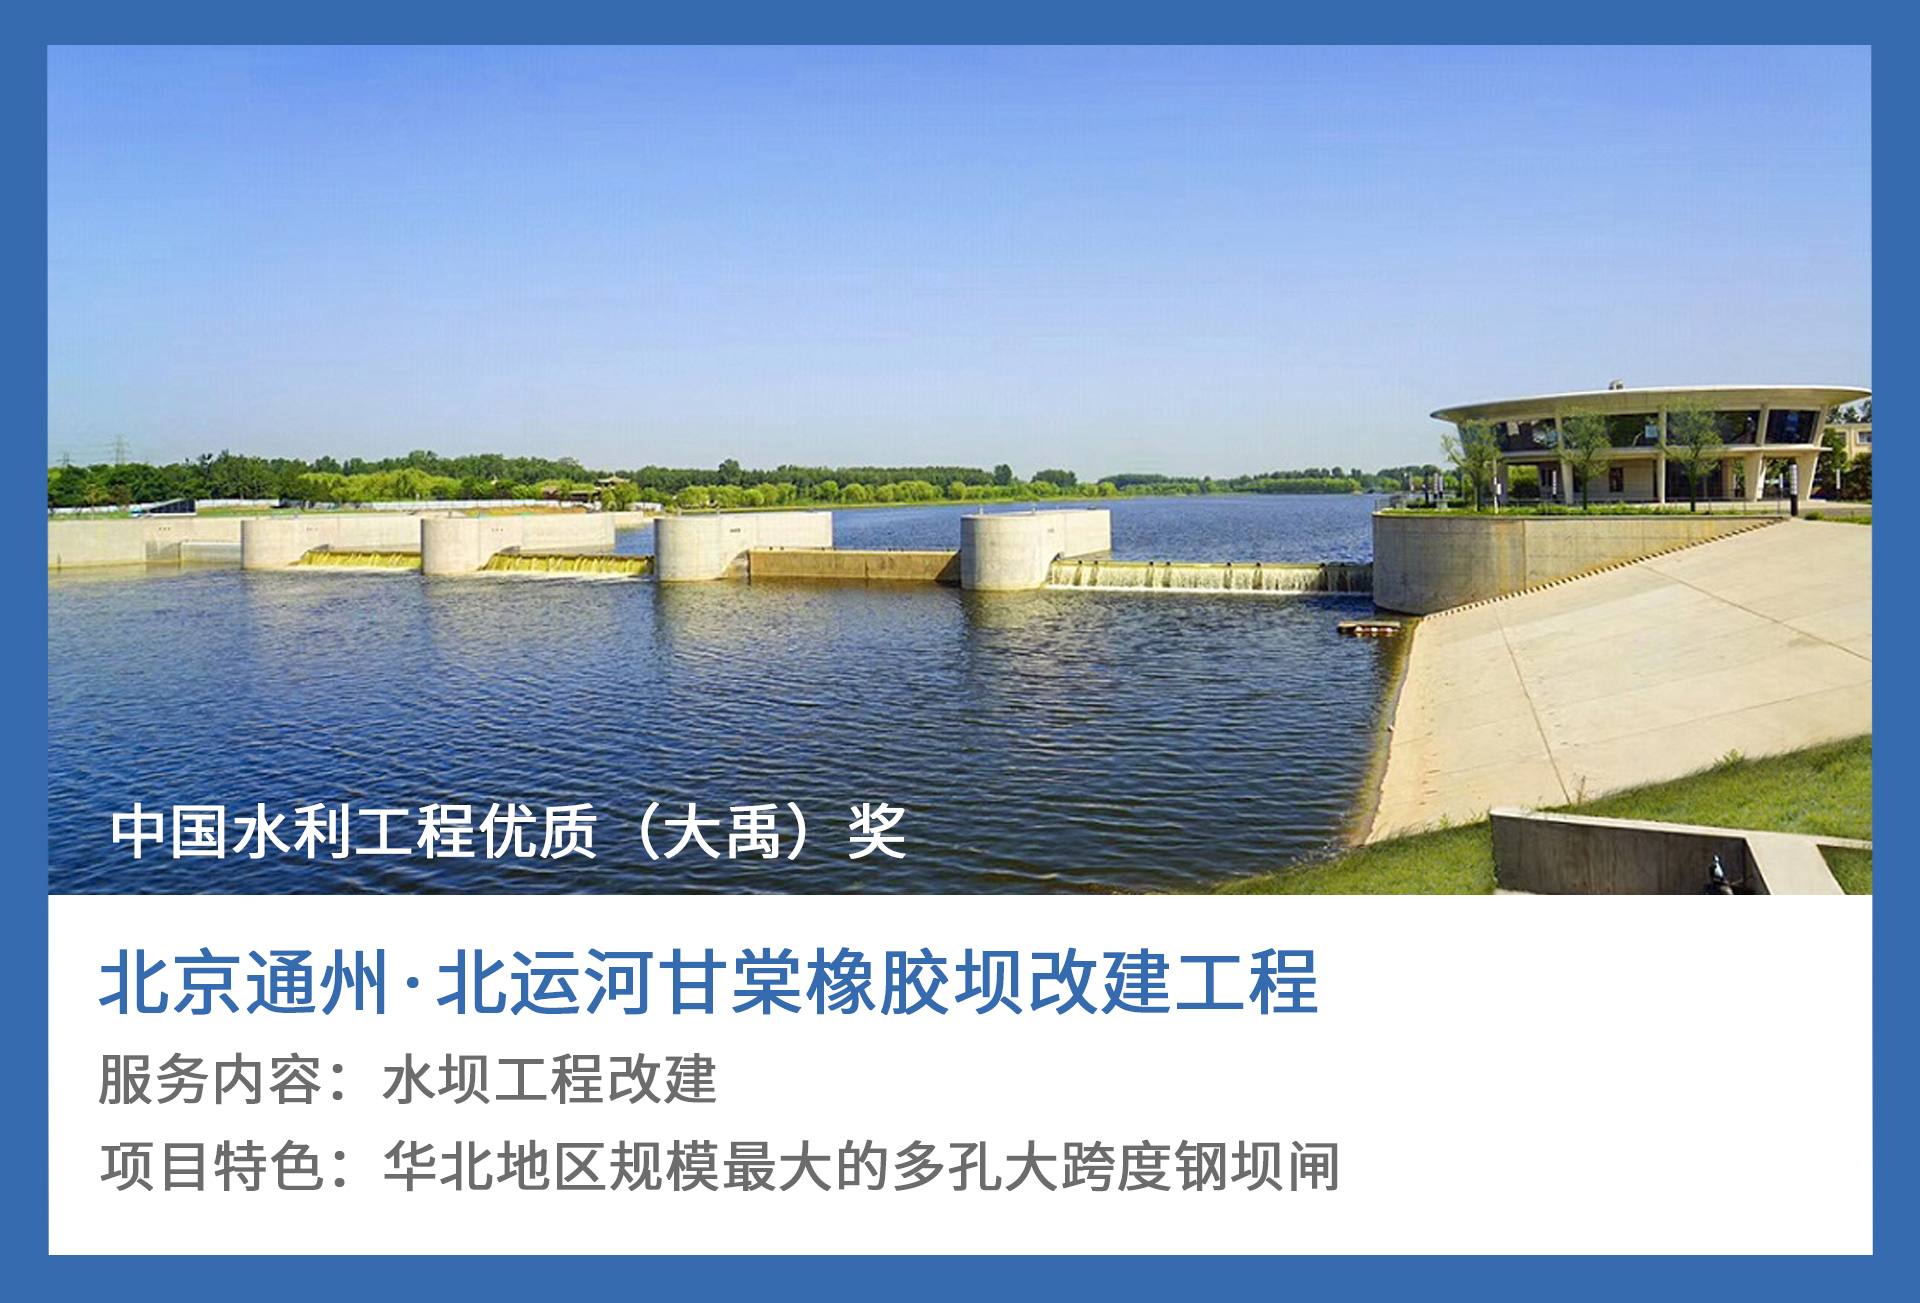 1、北京通州·北运河甘棠橡胶坝改建工程.jpg